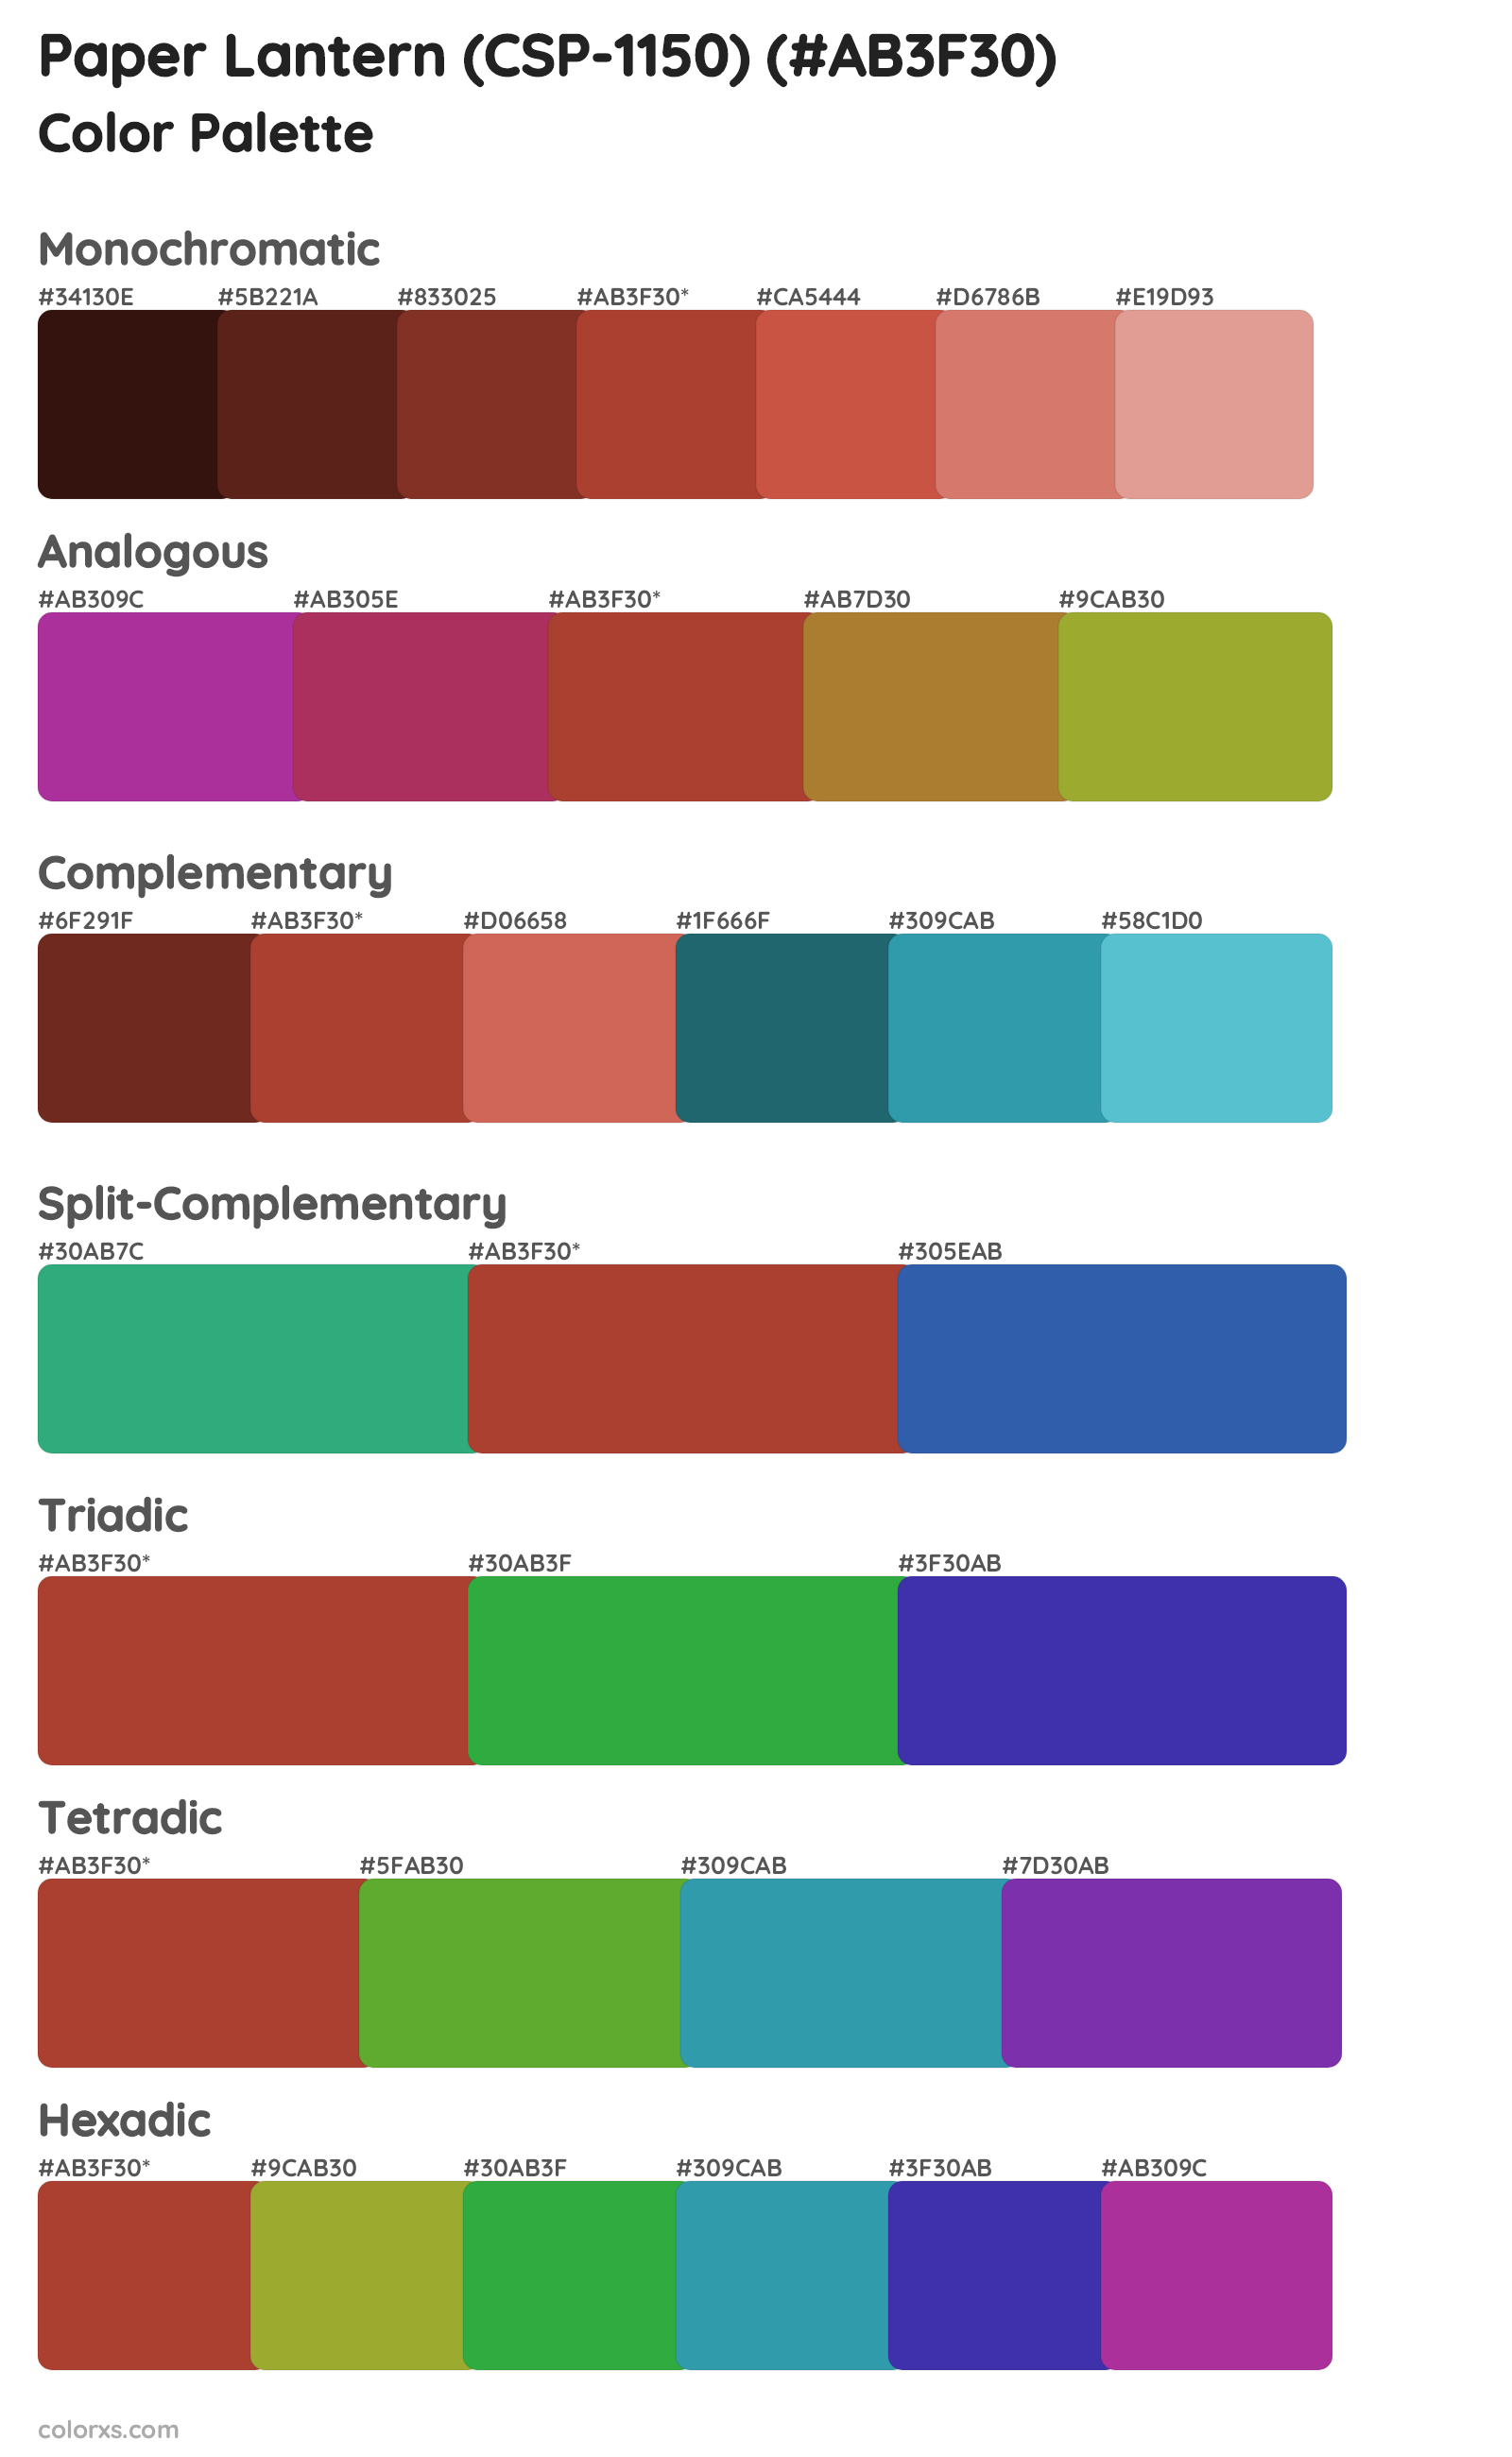 Paper Lantern (CSP-1150) Color Scheme Palettes